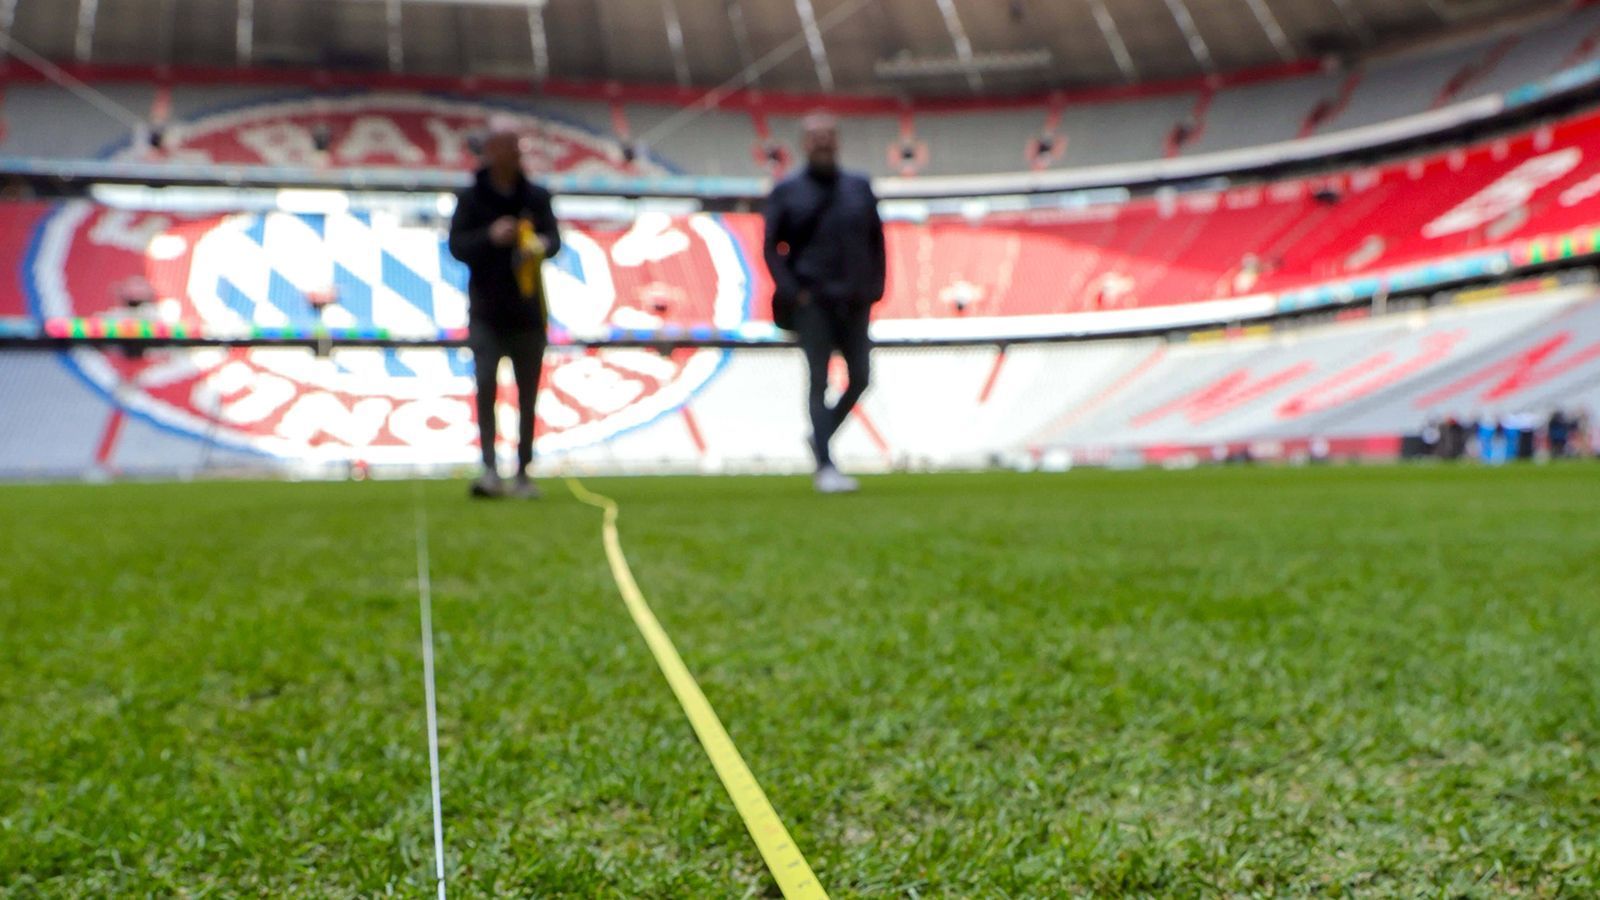 
                <strong>Maßnahmen auf dem Rasen</strong><br>
                ... und die Länge angepasst. Das Spielfeld der Münchner ist 105 Meter lang, die NFL benötigt allerdings knapp 110 Meter. In der Breite muss gekürzt werden: Von 68 Meter runter auf knapp 50 Meter. Da die Auslaufzonen relativ kurz sind, sollen Prallwände vor den Zäunen die Spieler schützen.
              